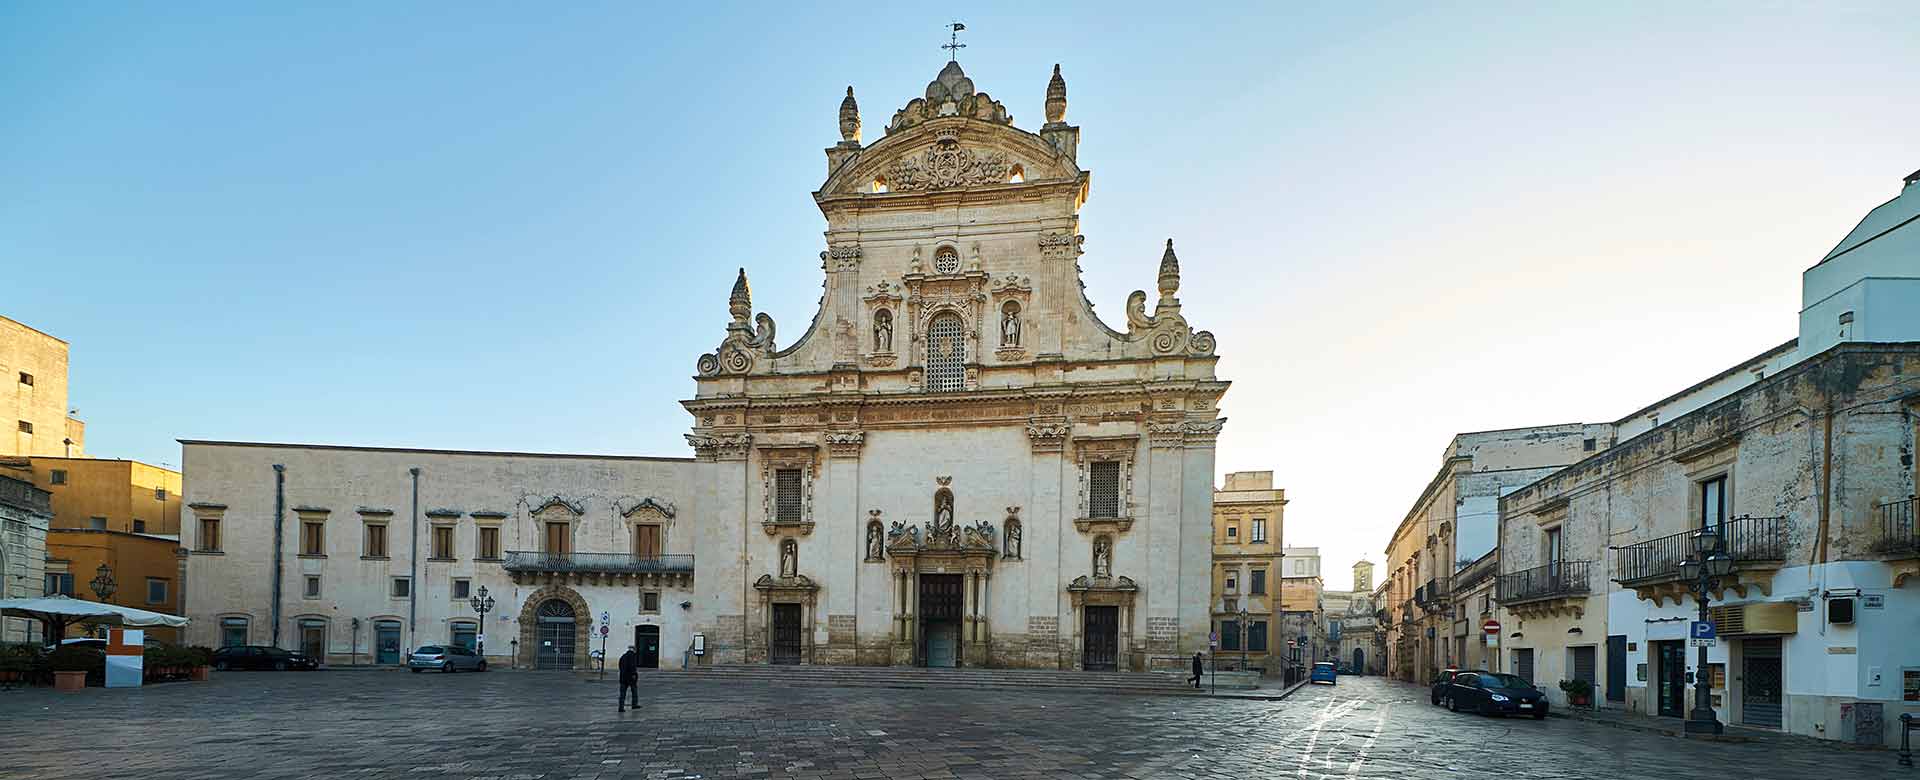 Chiesa dei S.S. Pietro e Paolo, Galatina (LE) ©CosimoGiovanni/Adobe Stock